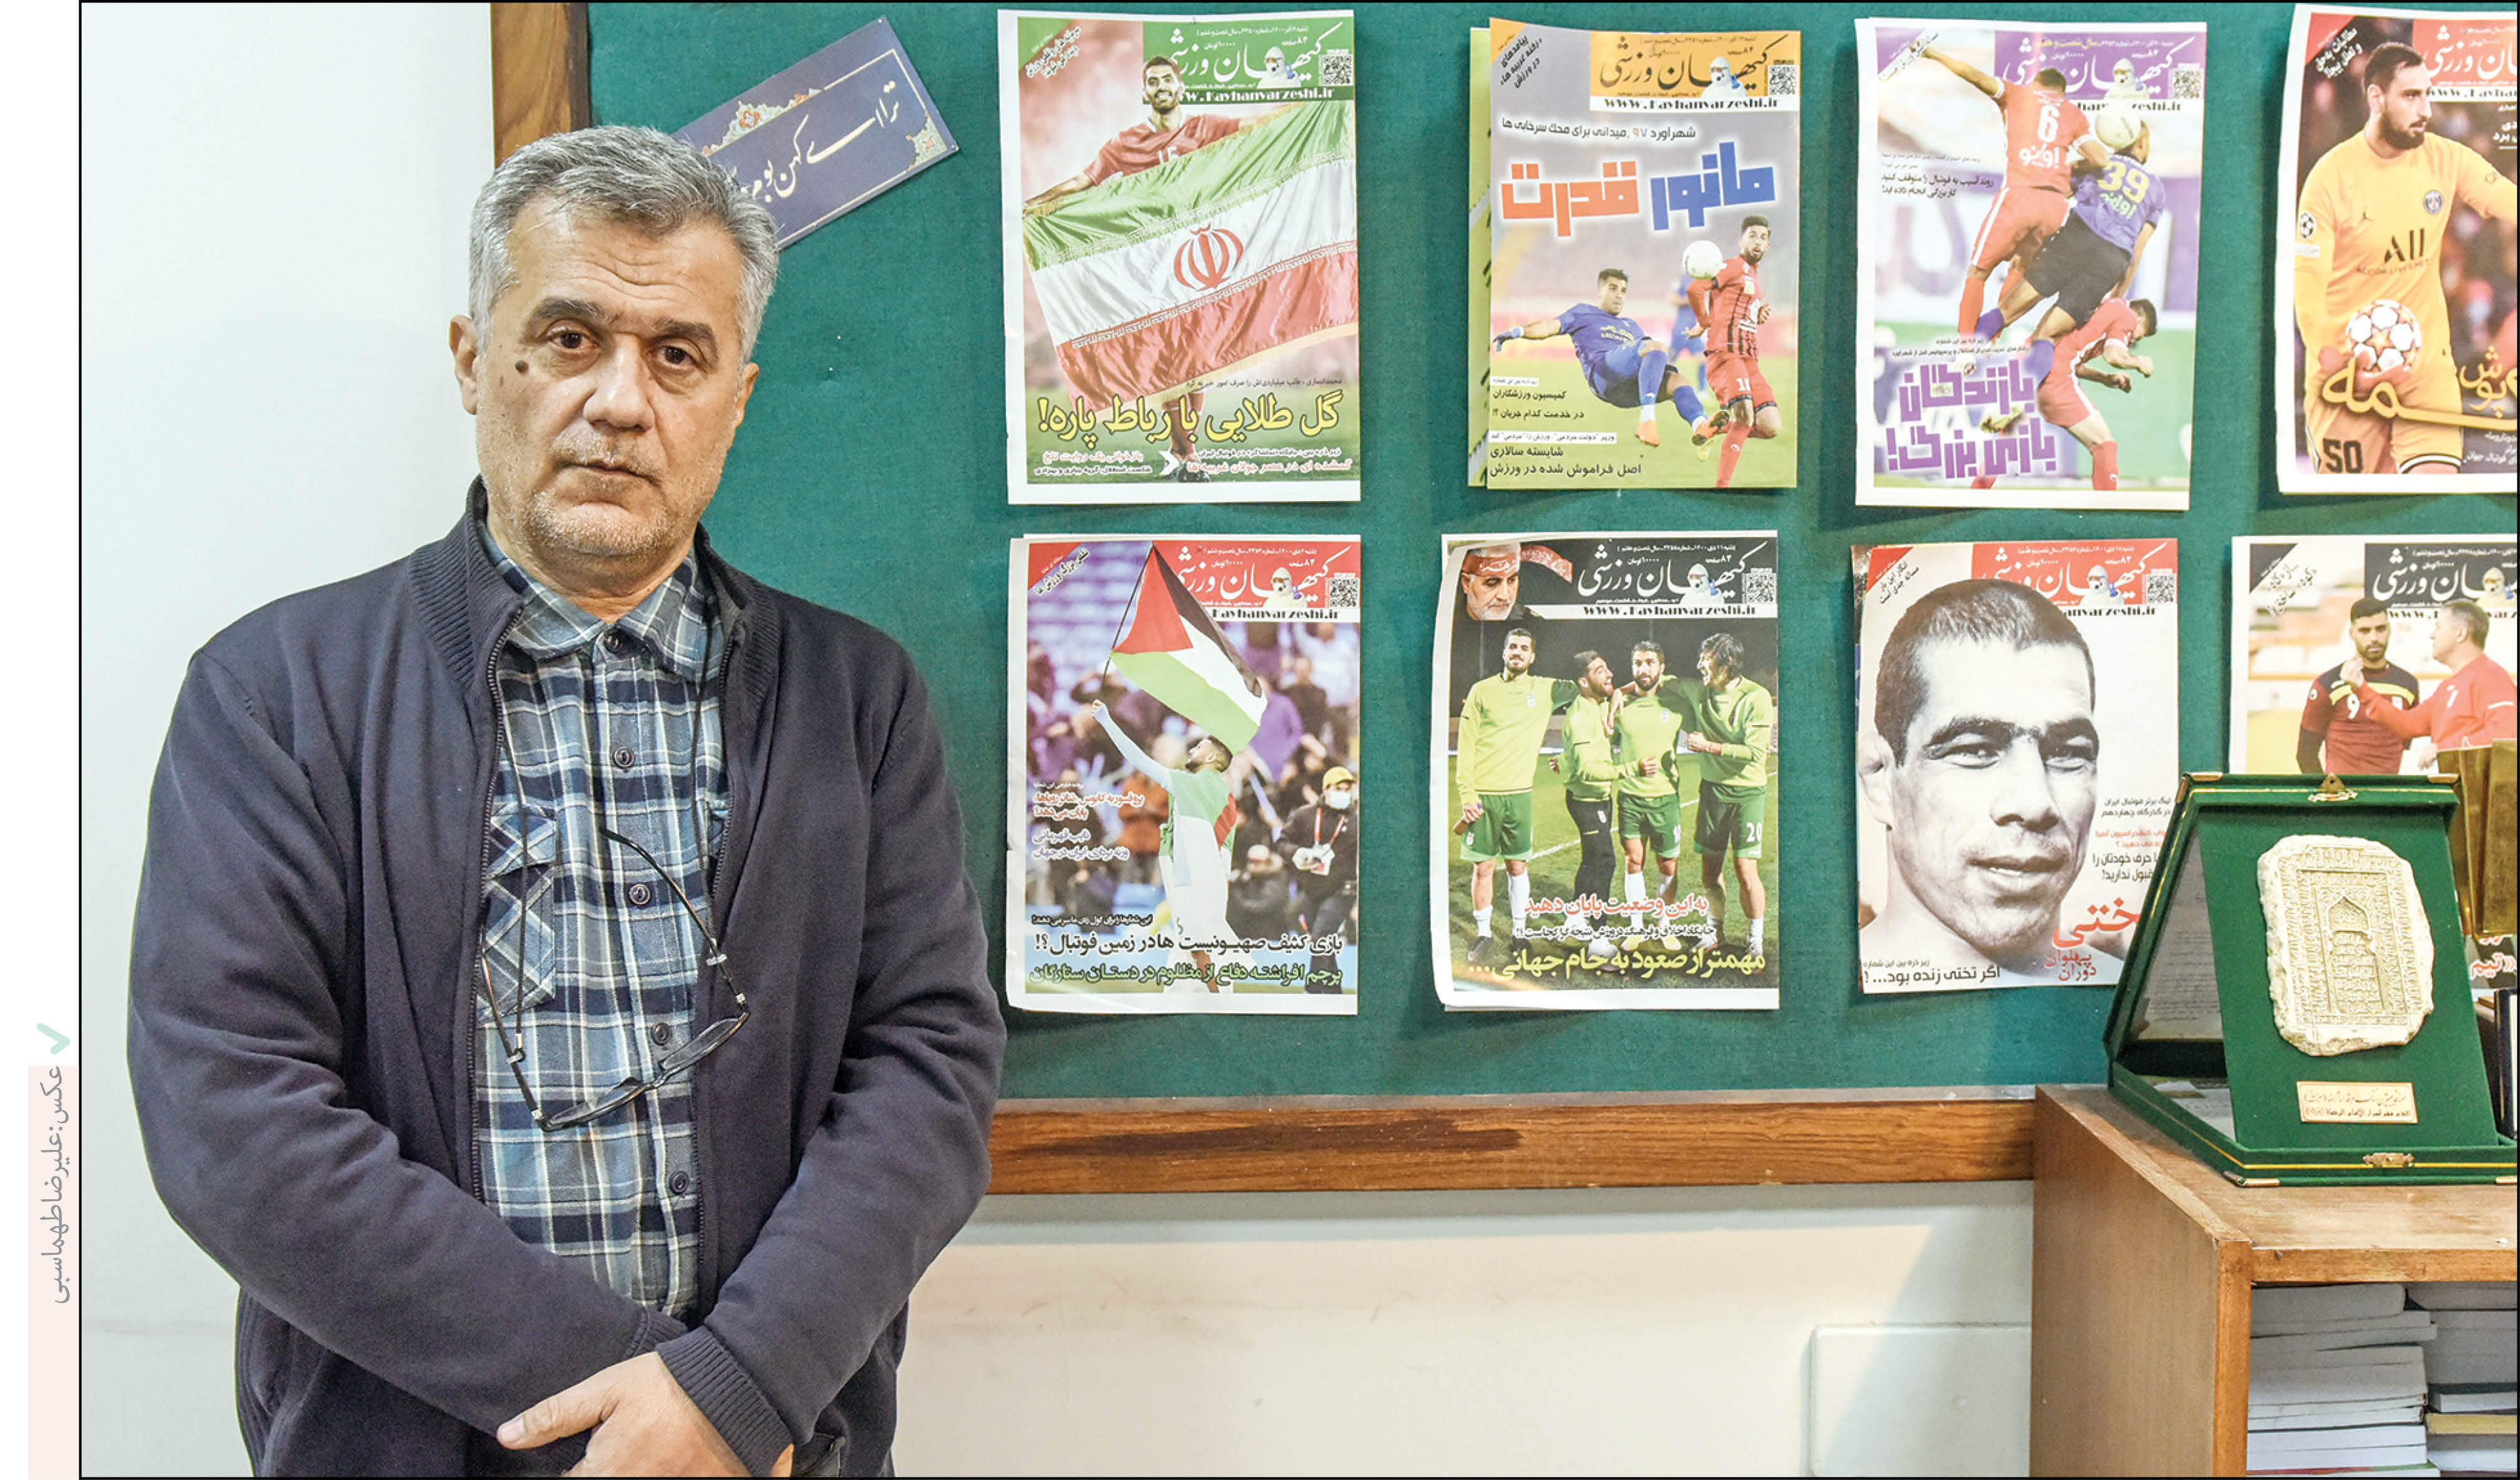 خاطره بازی با سیدمحمدسعید مدنی که سه دهه سردبیری نشریه کیهان ورزشی یکی از قدیمی‌ترین نشریه‌های ورزشی را بر عهده داشته است